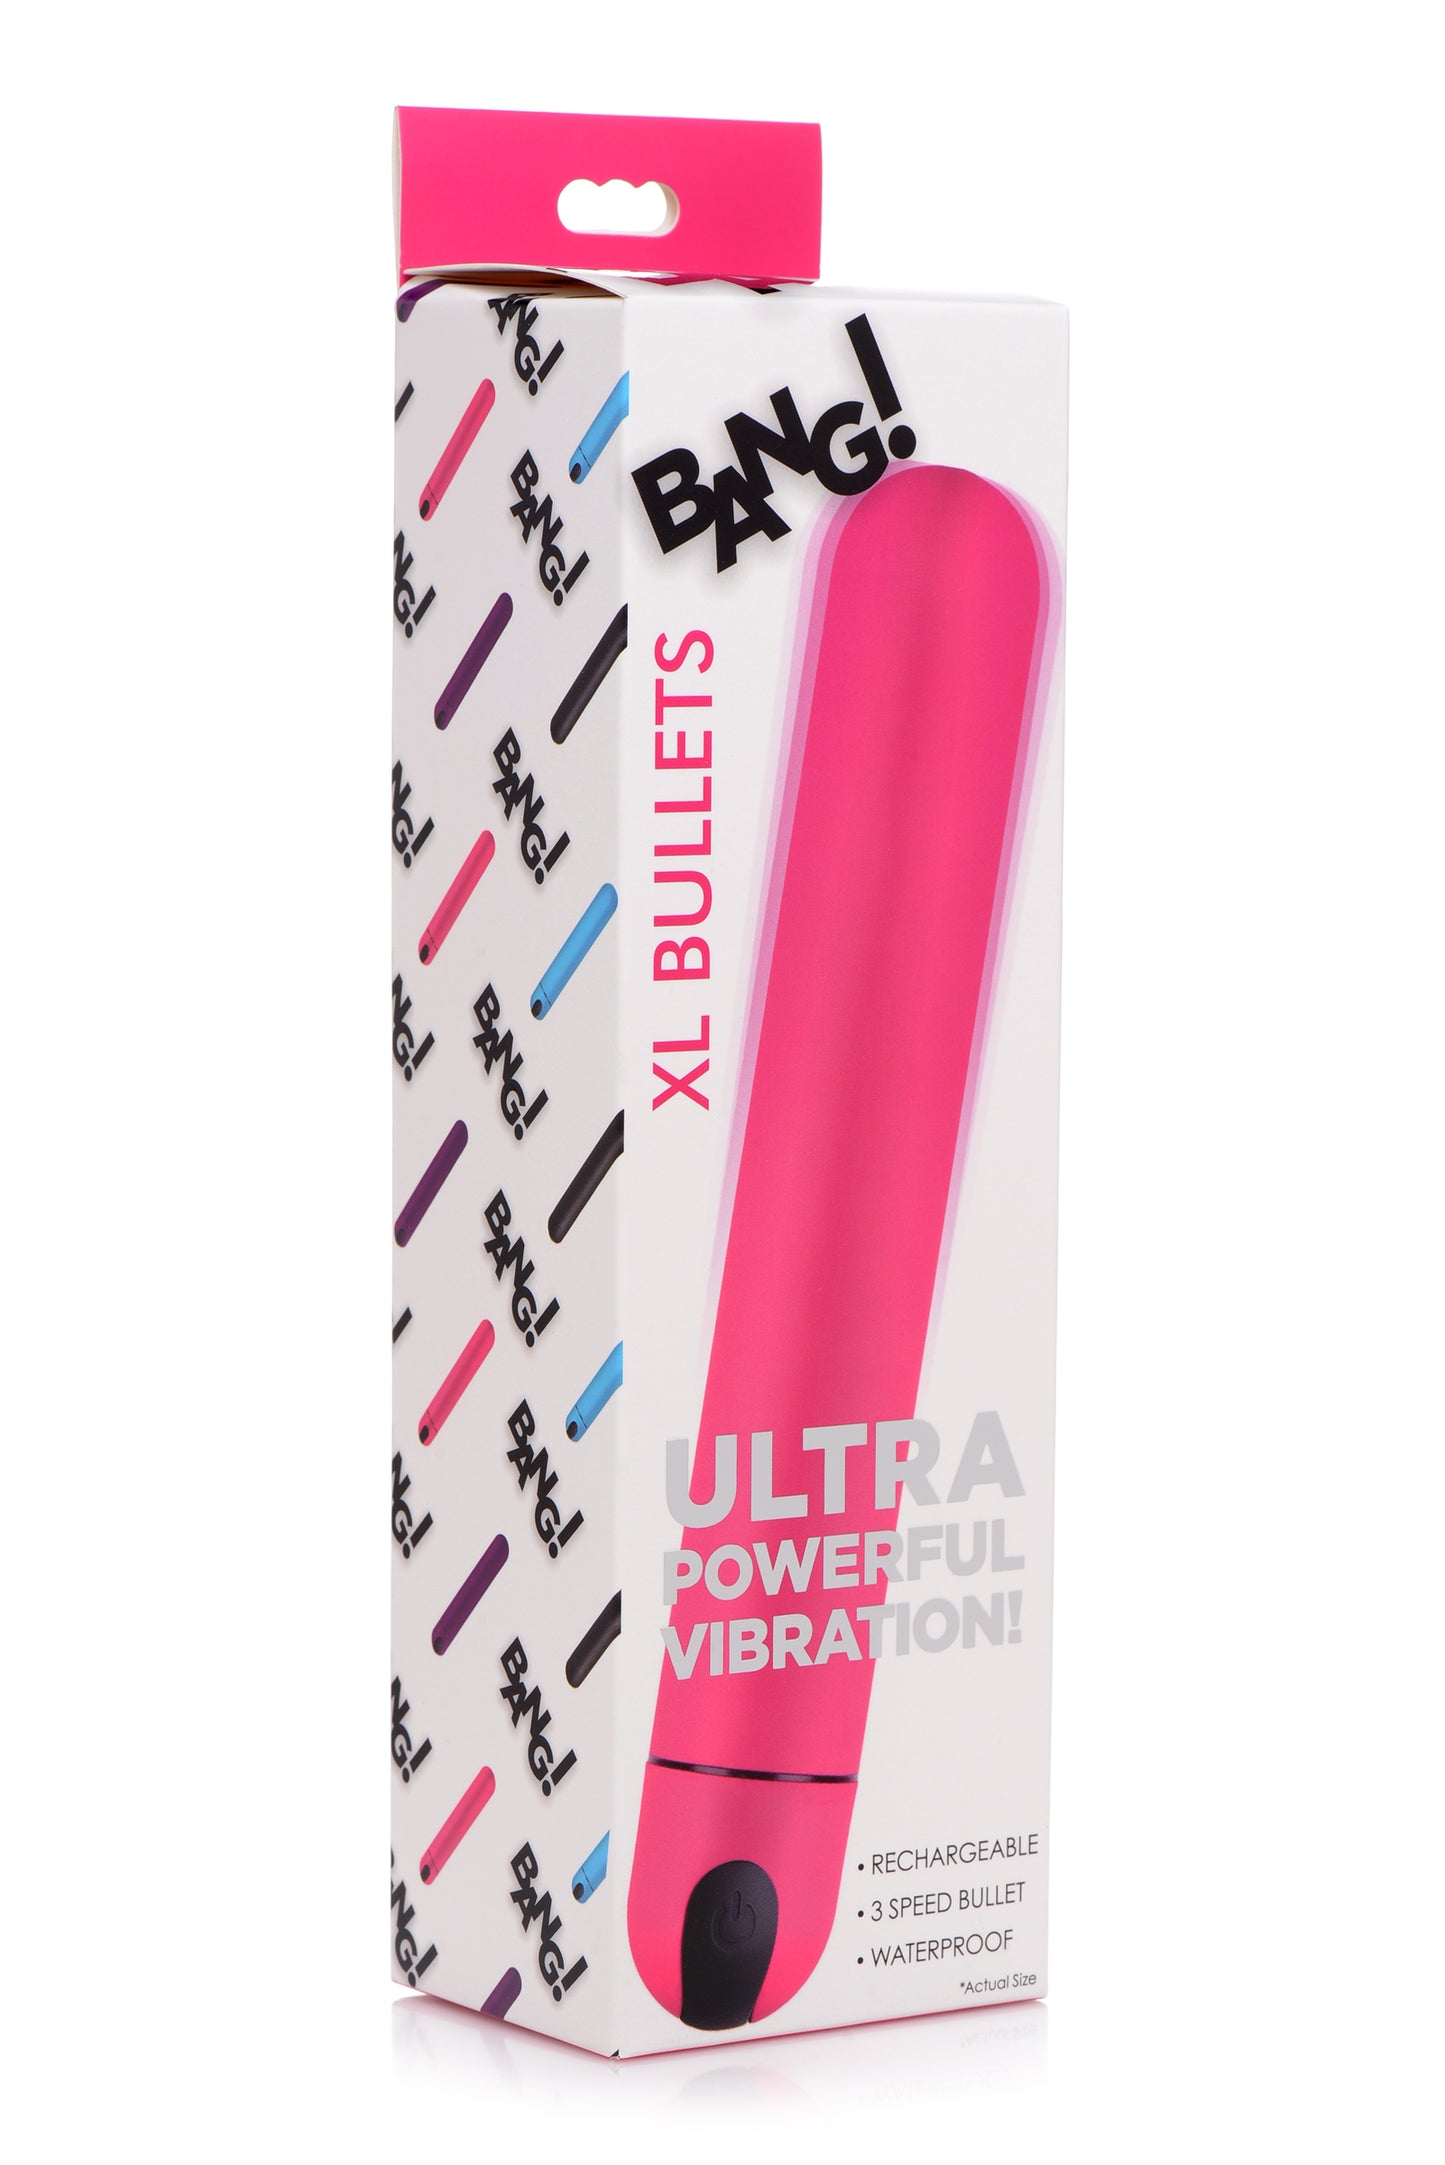 XL Bullet Vibrator - Pink - UABDSM